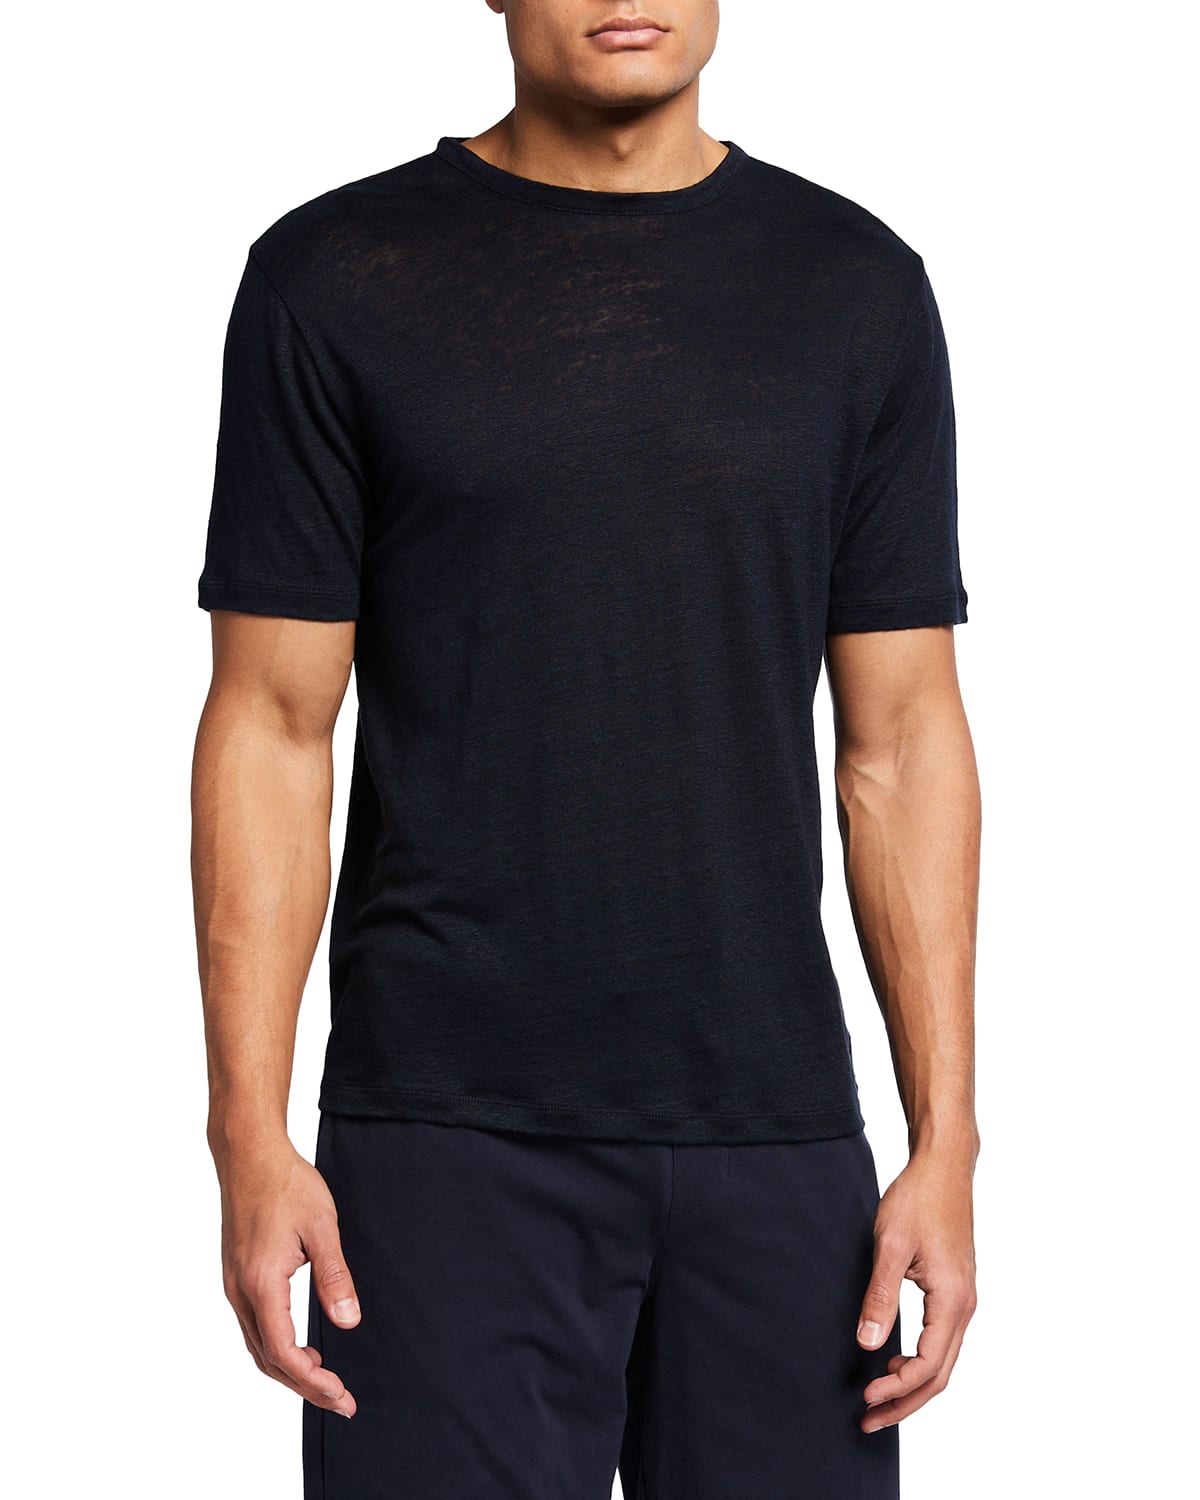 Vince Men's Linen Jersey T-Shirt